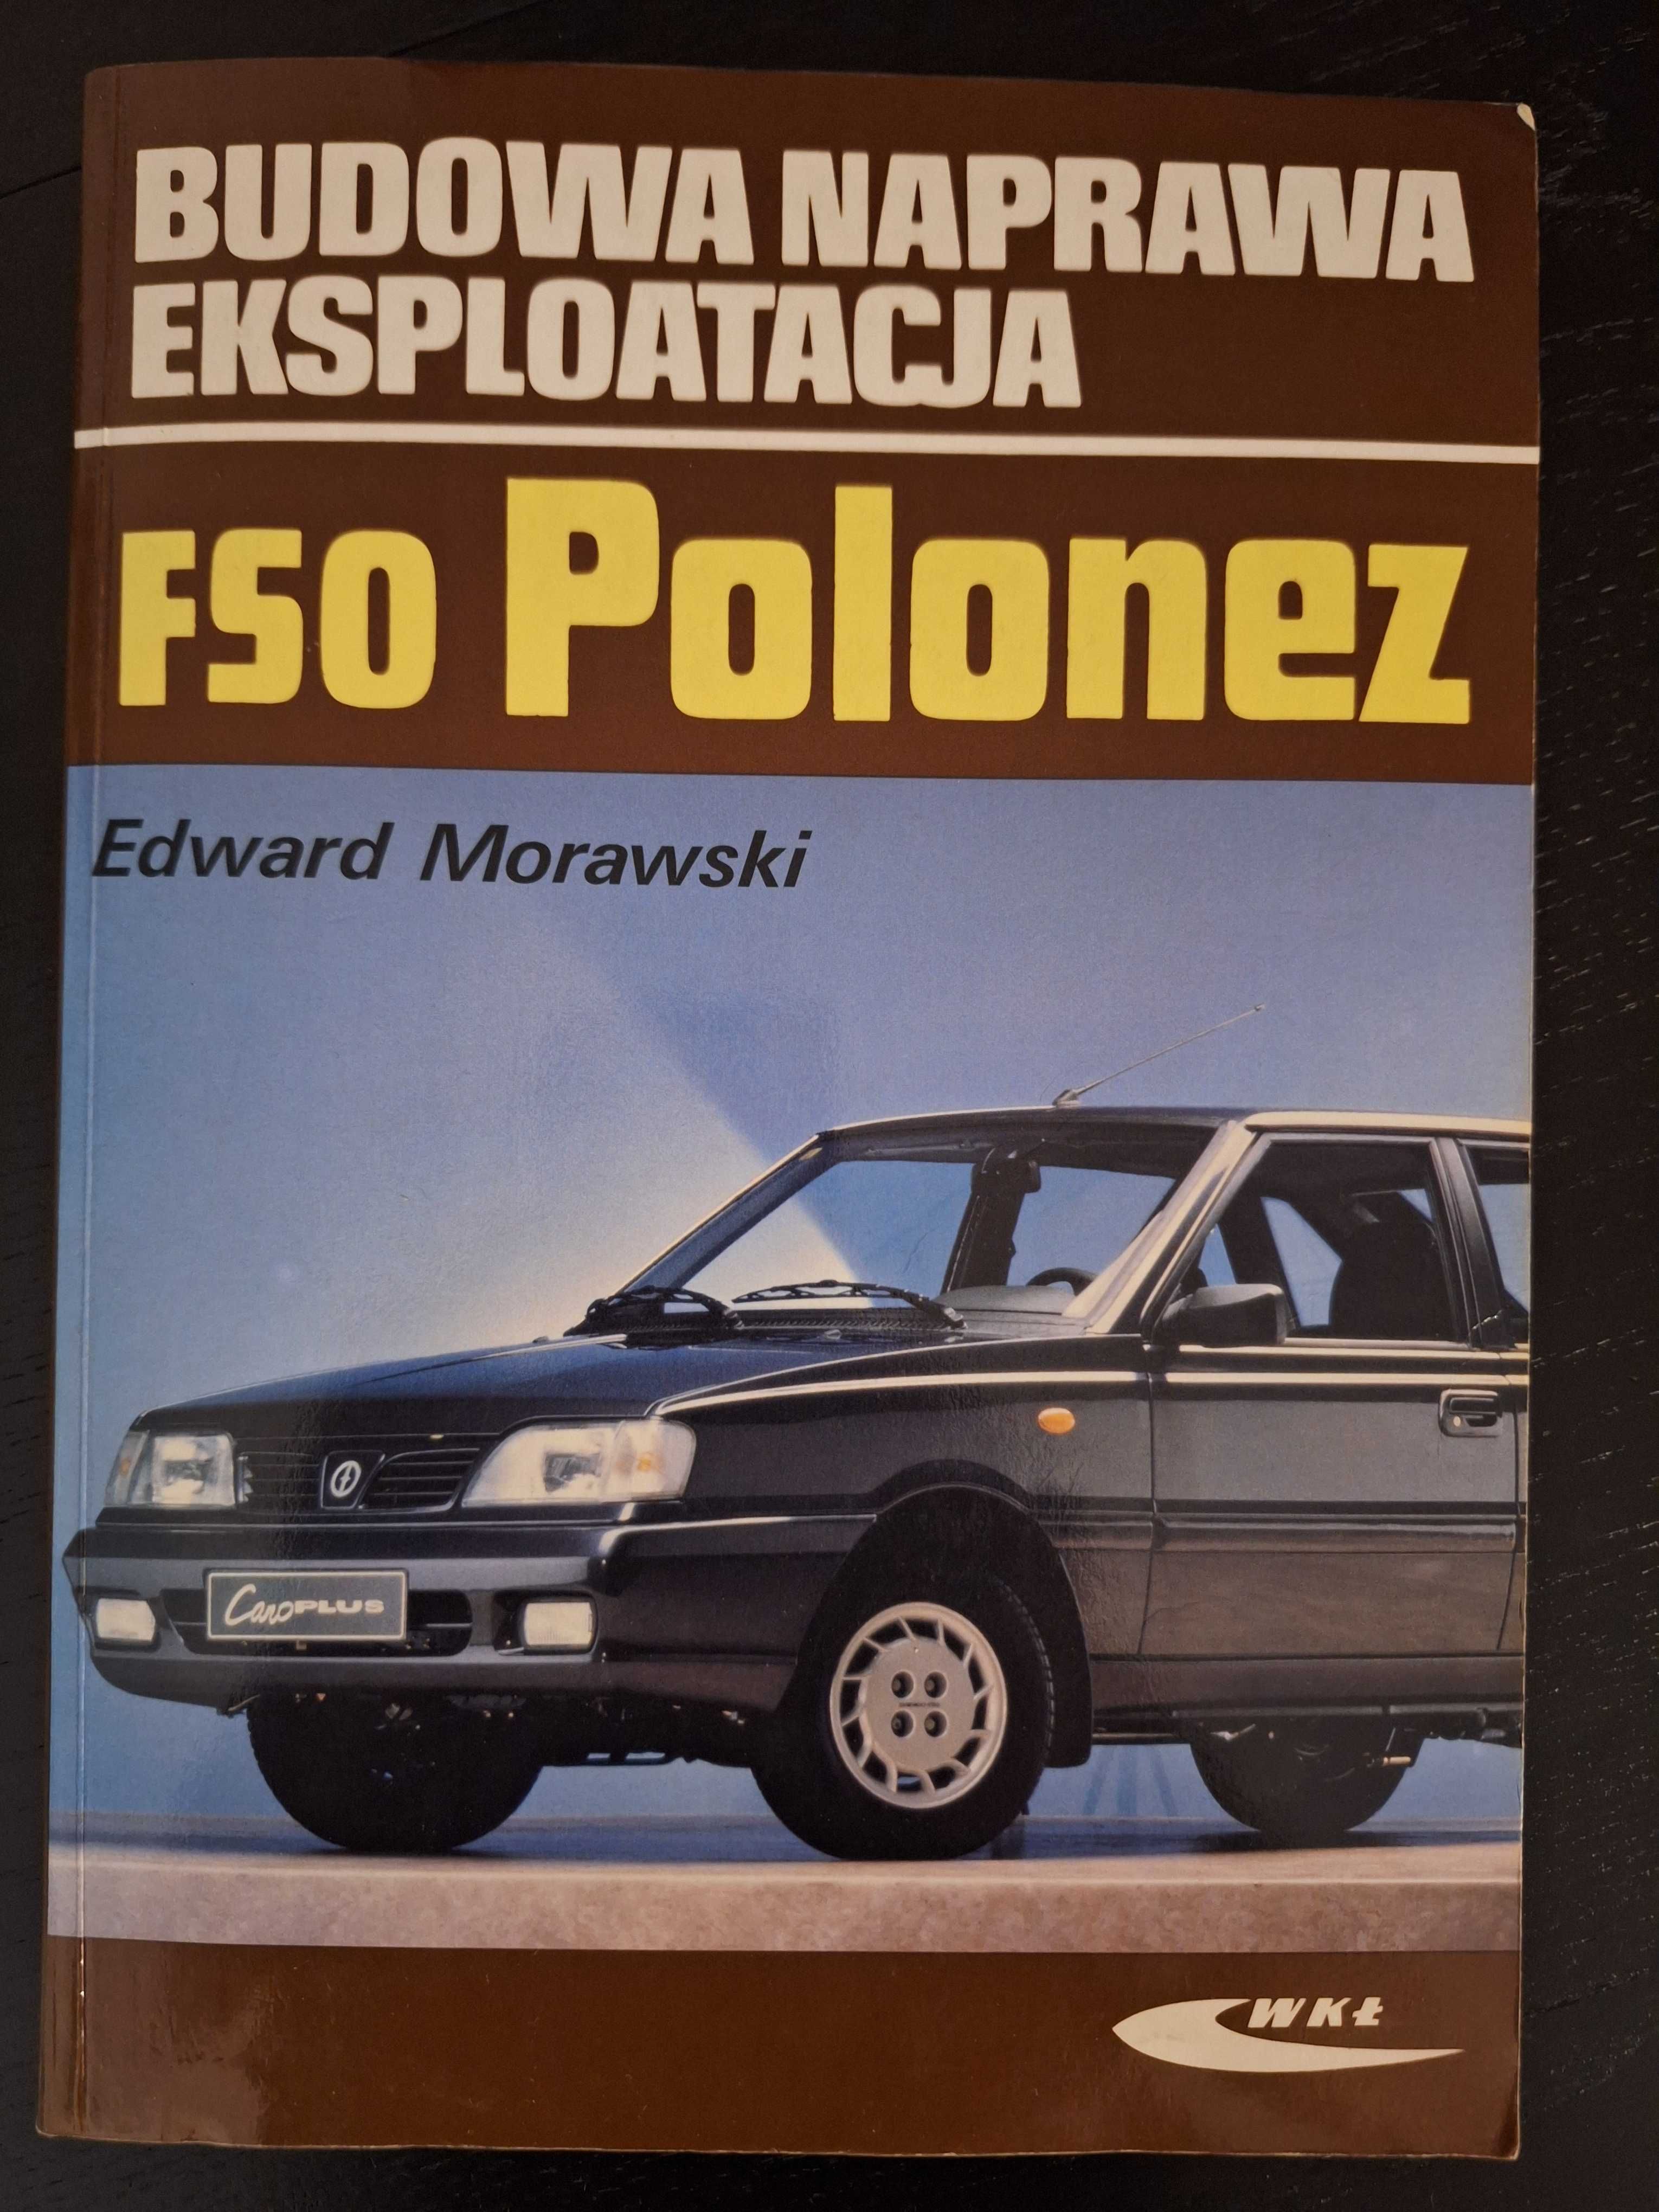 Polonez Atu Plus 1,6 GSI rocznik 1998, od pierwszego właściciela